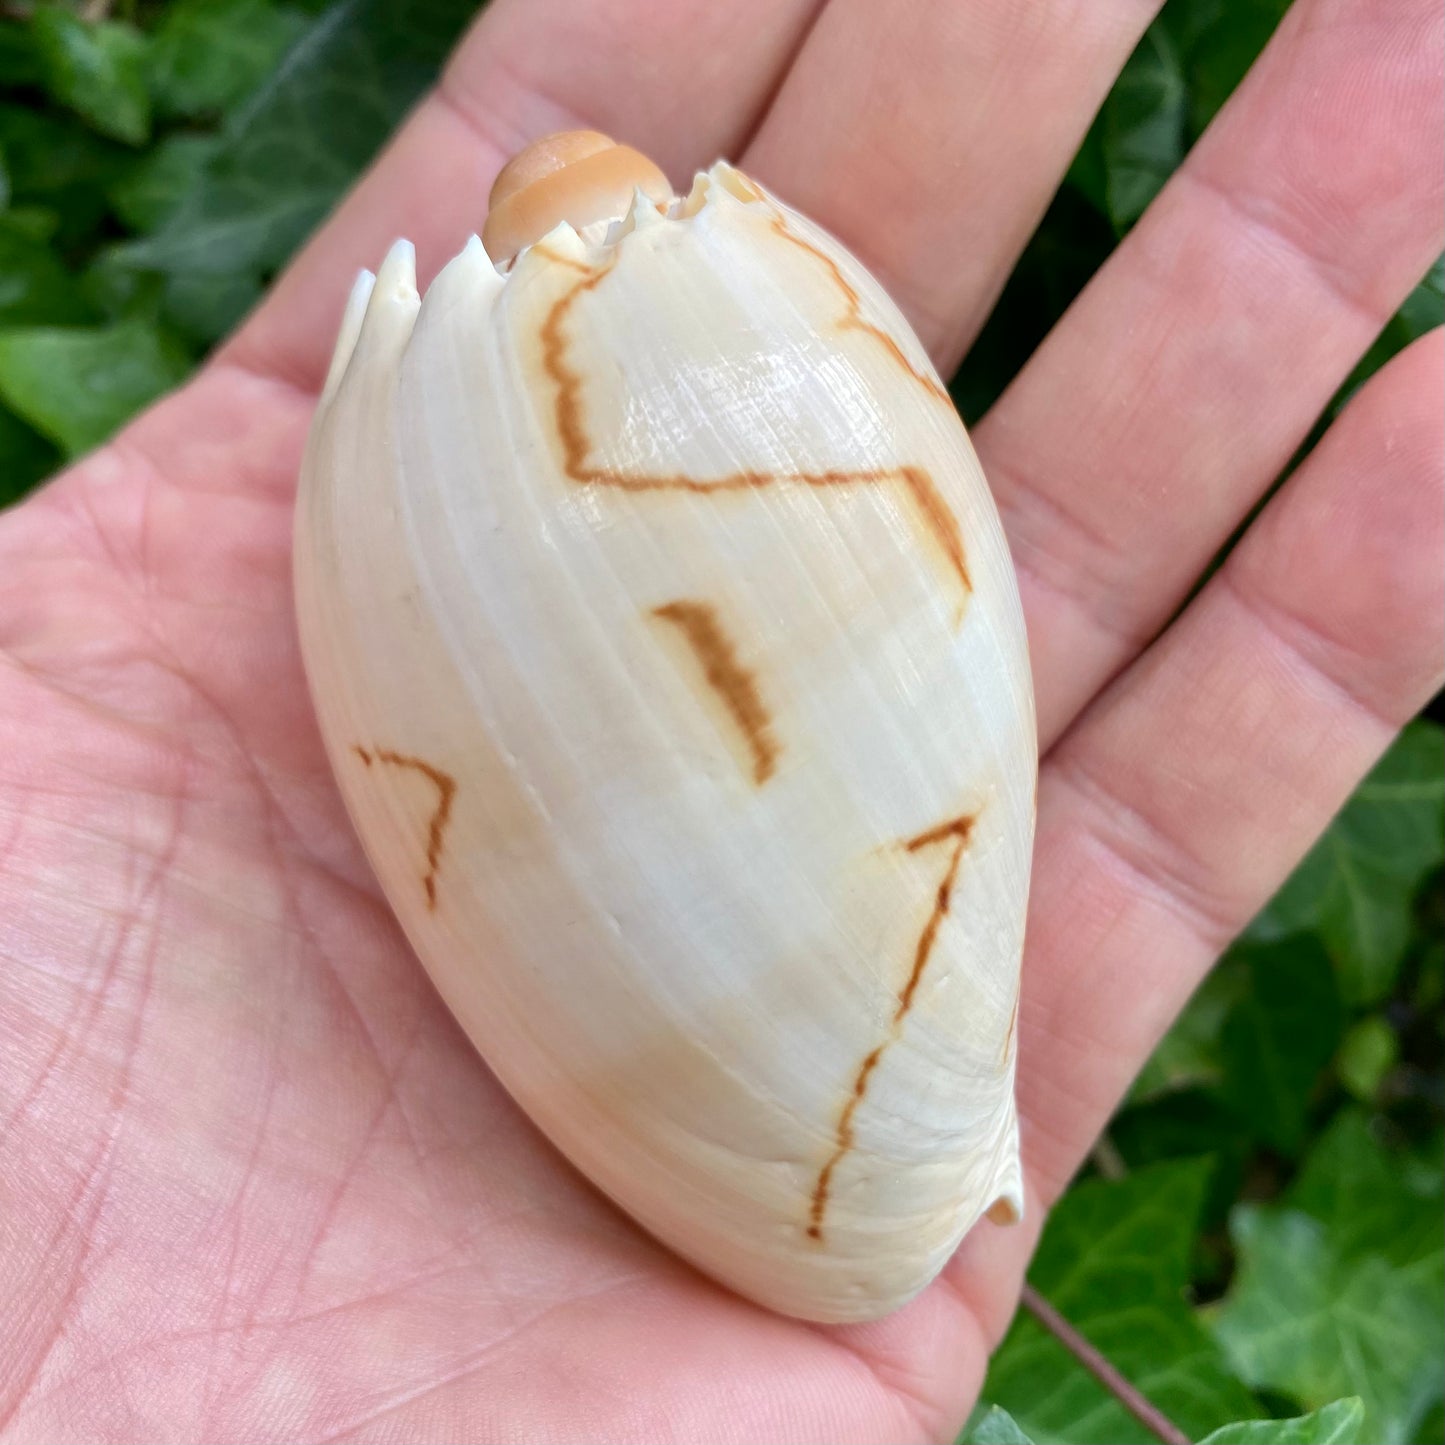 Melon shell - konkylie Melon shell - konkylie